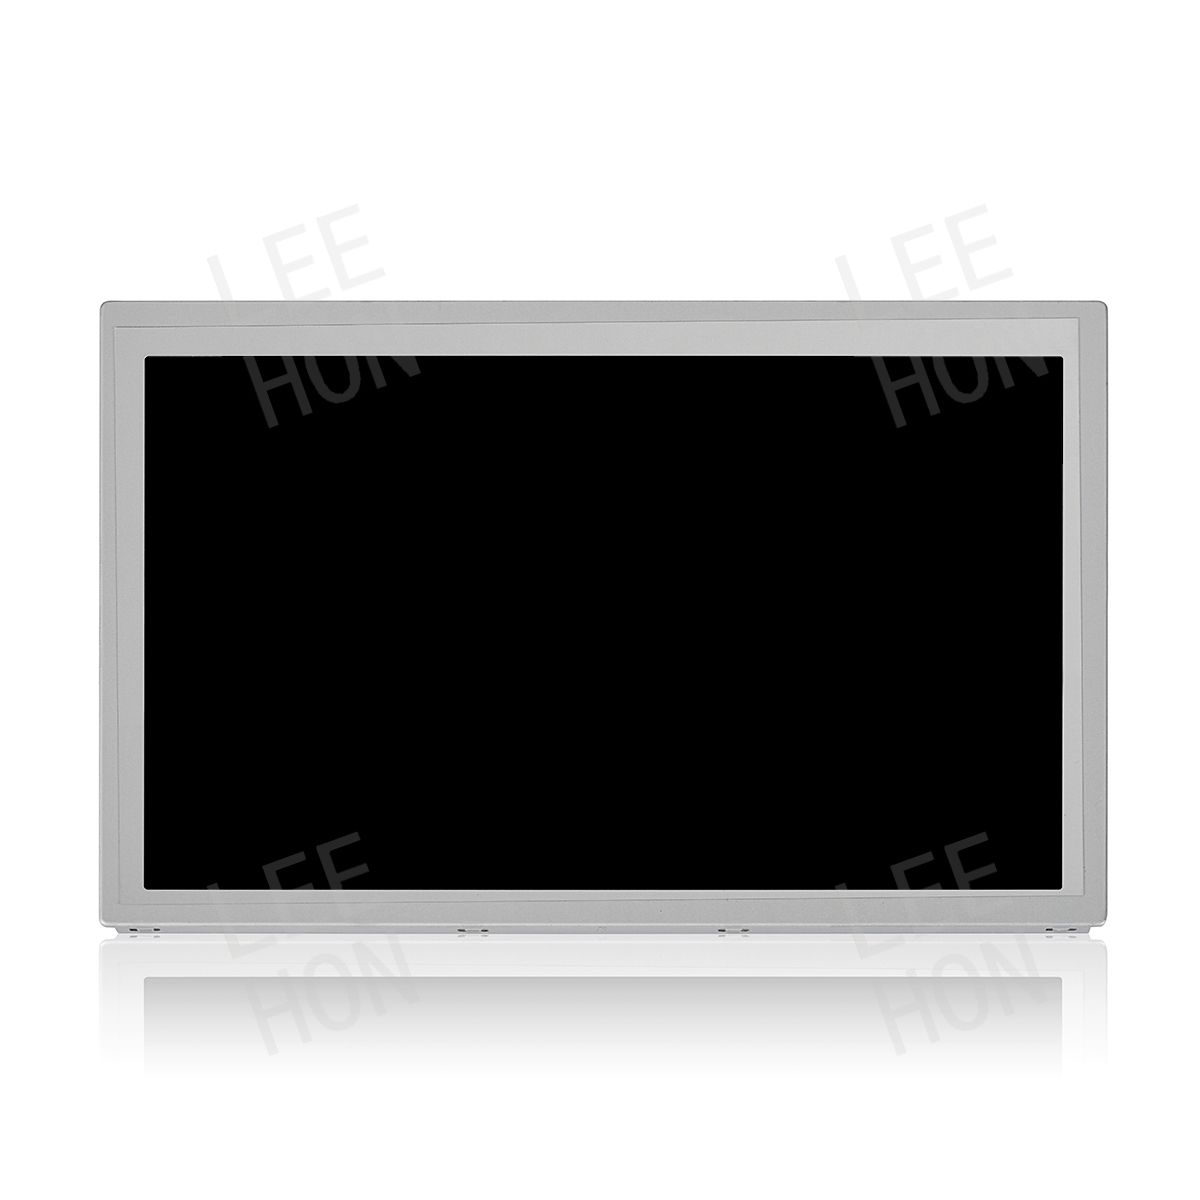 <b>Kyocera 7 Inch 800x480 WXGA LCD Panel TFT IPS Display TCG070WVLQGPNN-AN40 1000nits High Brightness</b>